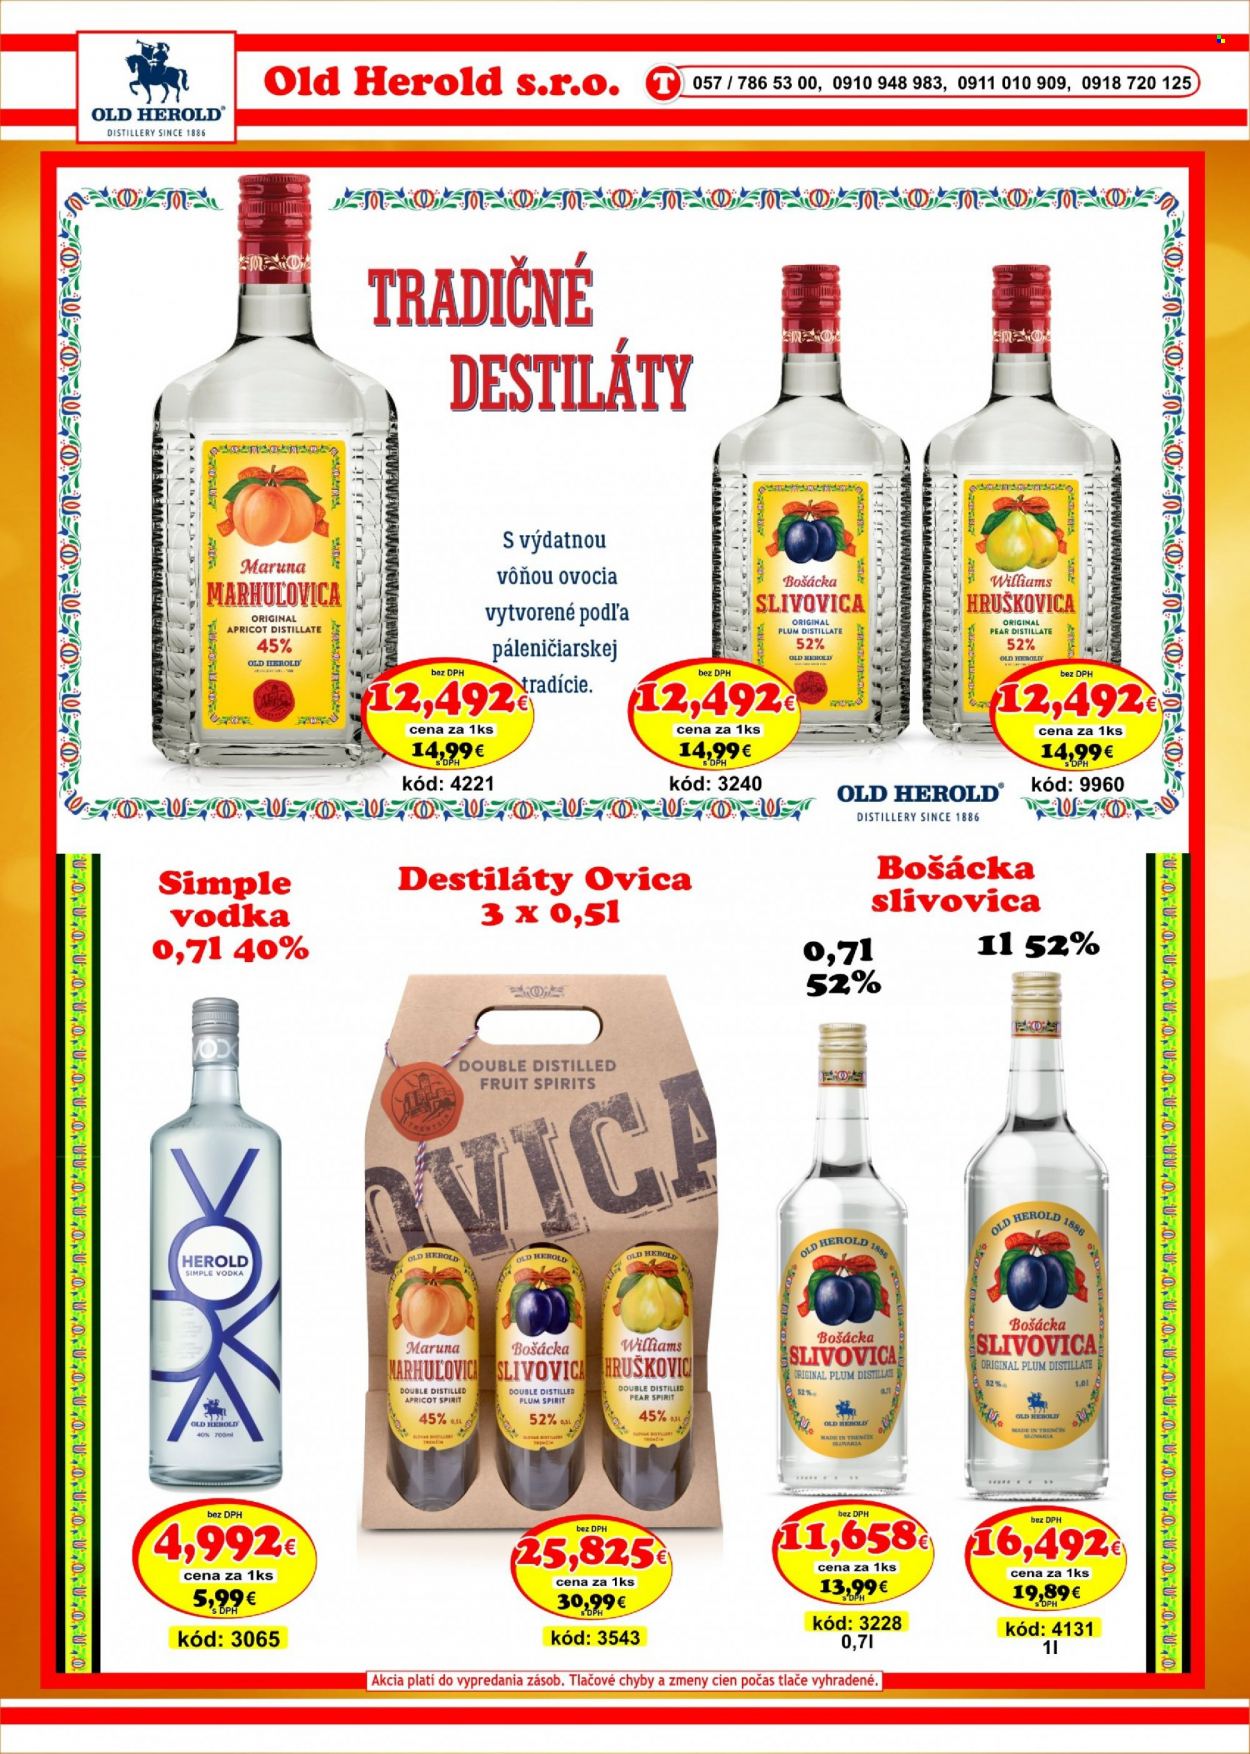 thumbnail - Leták DMJ market - 1.2.2023 - 28.2.2023 - Produkty v akcii - alkohol, Bošácka slivovica, slivovica, vodka, hruškovica, Old Herold, marhuľovica, Herold, Cien. Strana 20.